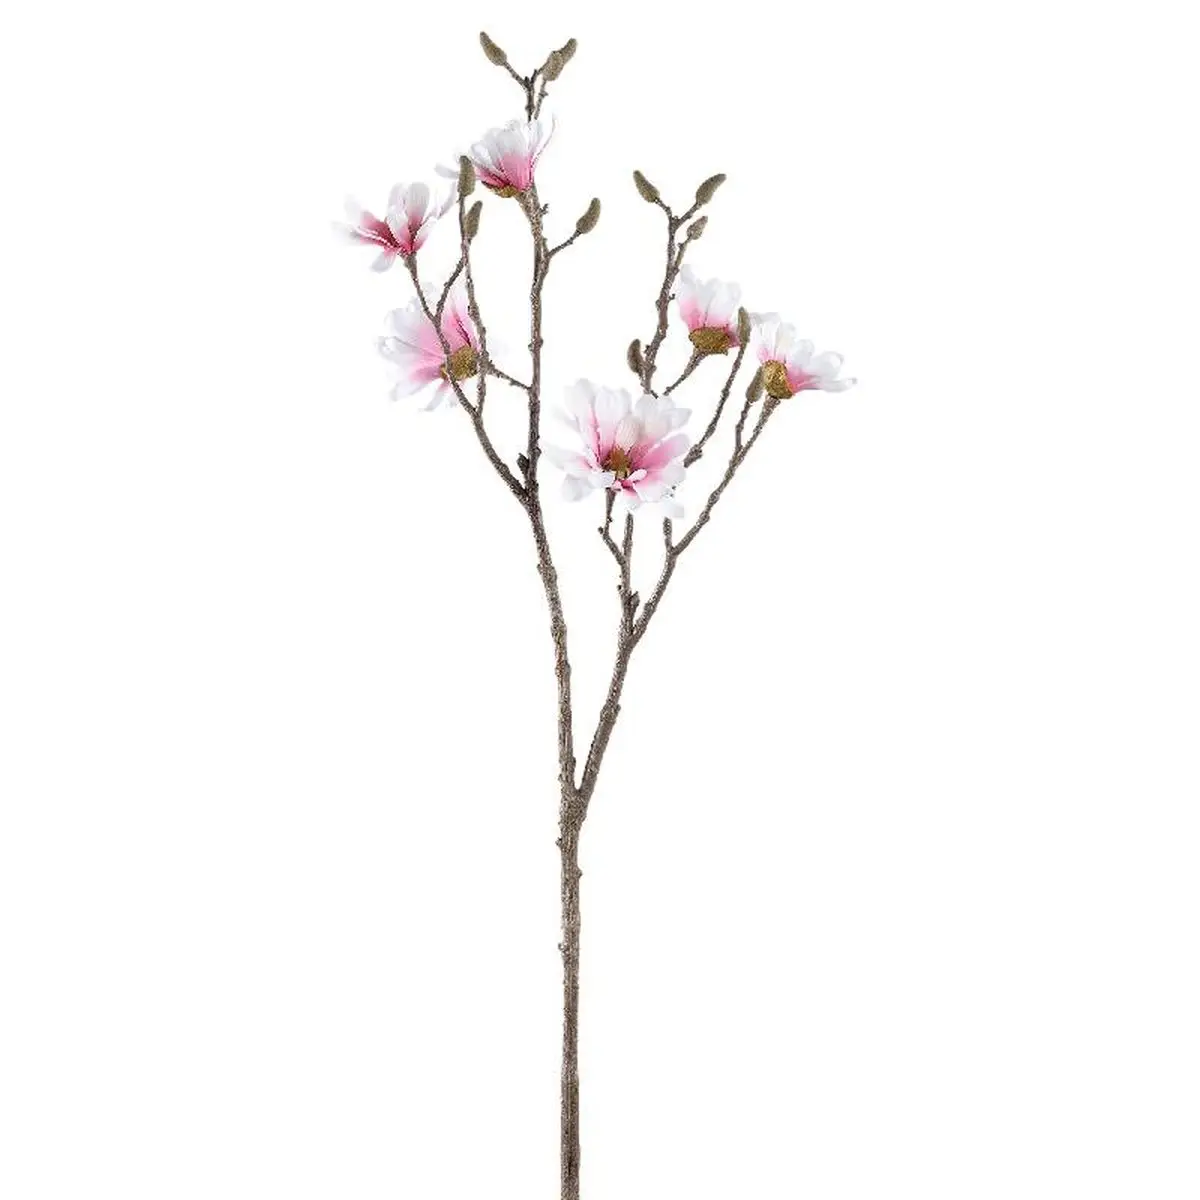 Blume K眉nstliche Magnolia